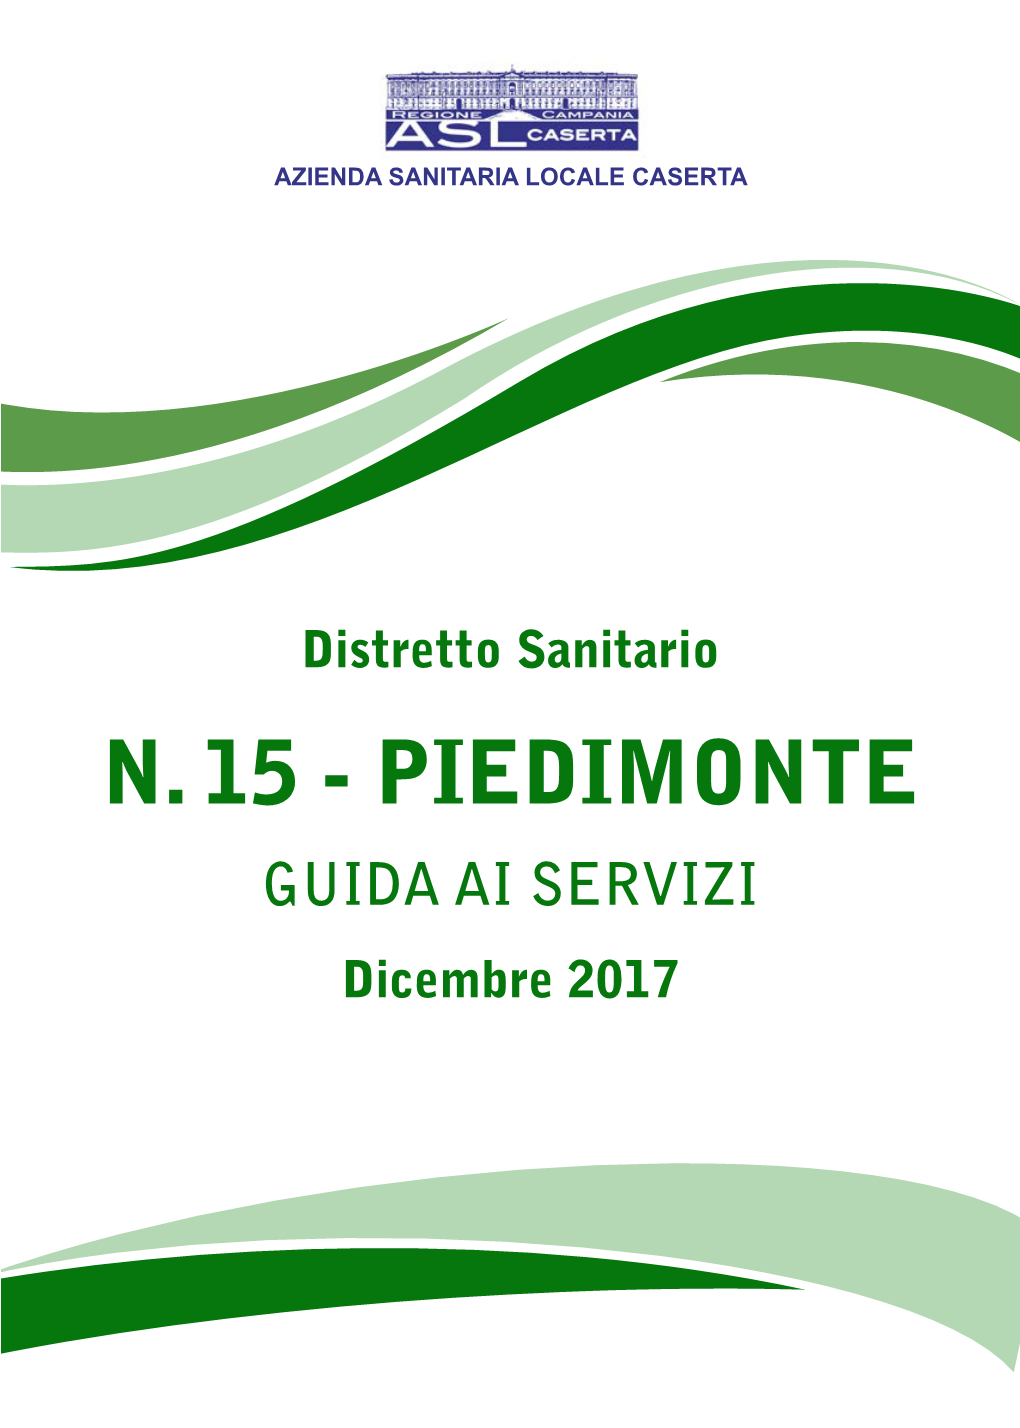 N. 15 - PIEDIMONTE GUIDA AI SERVIZI Dicembre 2017